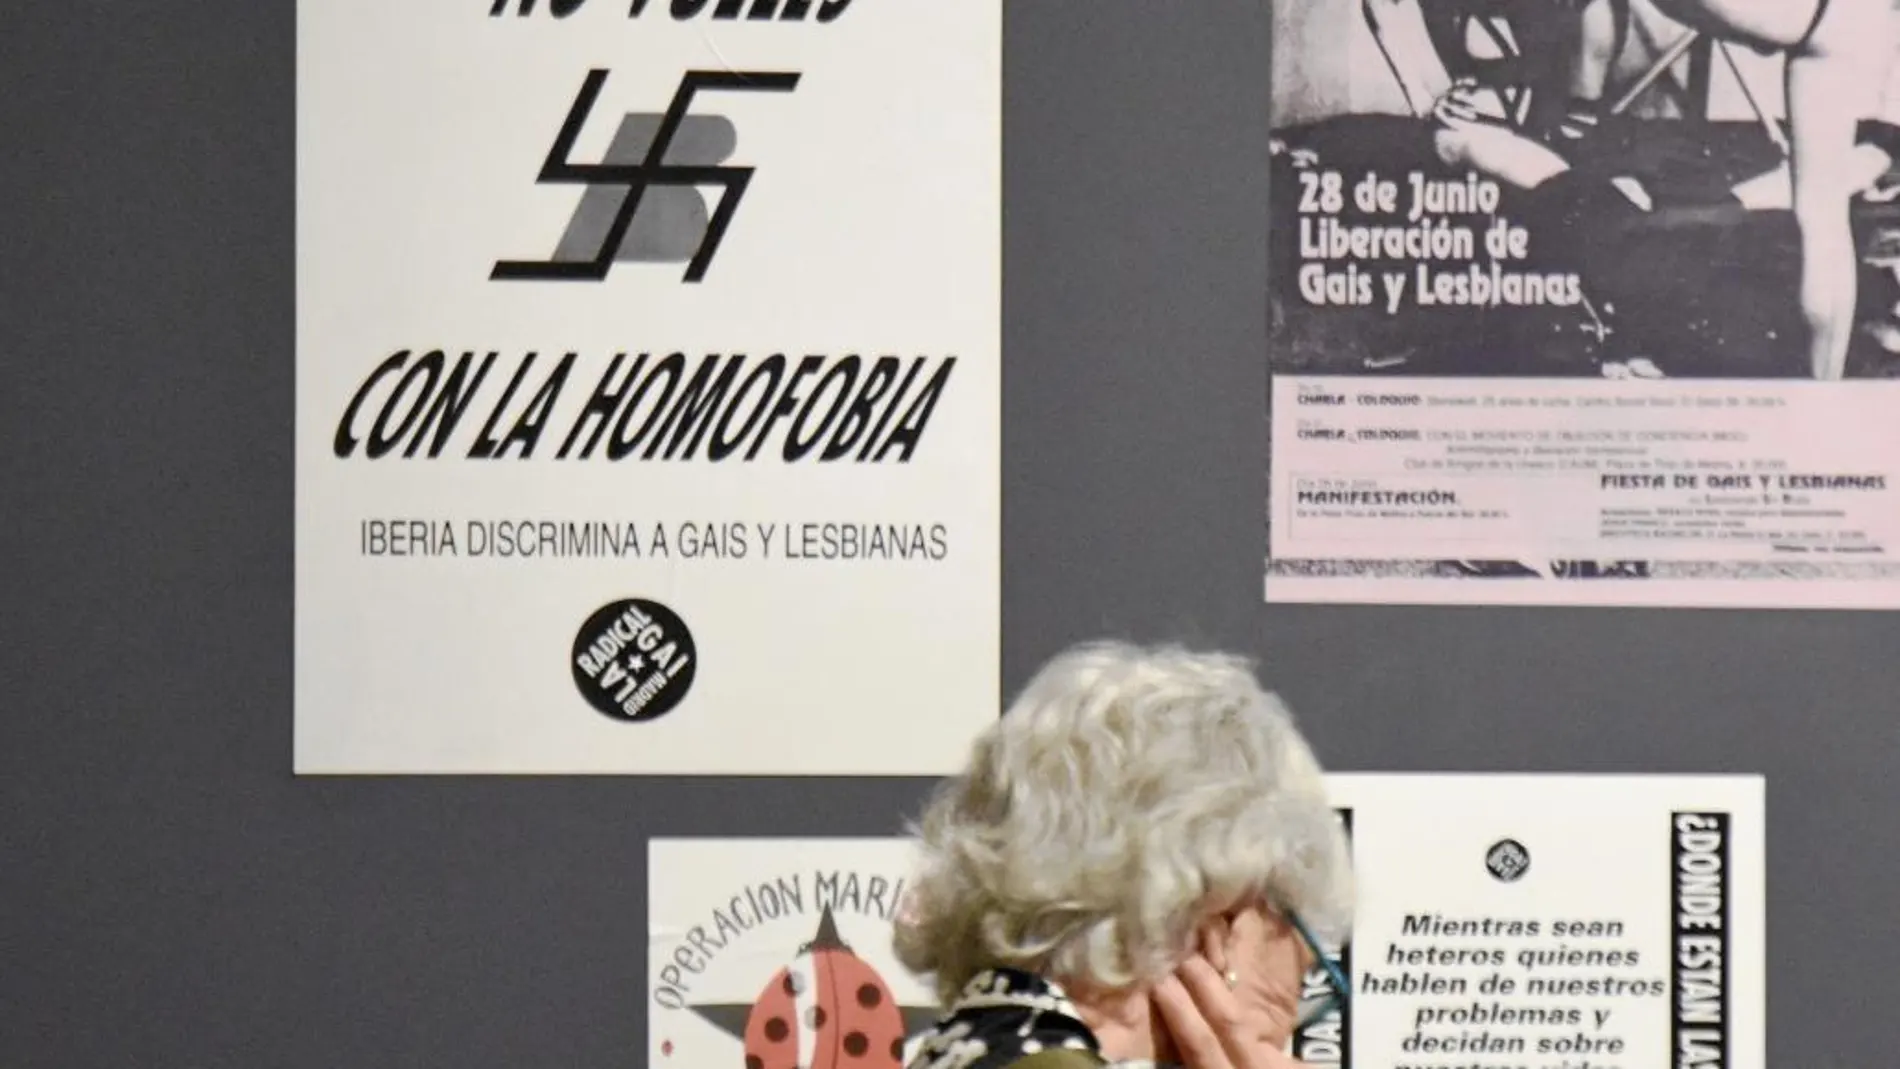 Imagen del mural de la exposición «El porvenir de la revuelta» en el que se incluye el póster en el que se superpone una esvástica al logo de Iberia